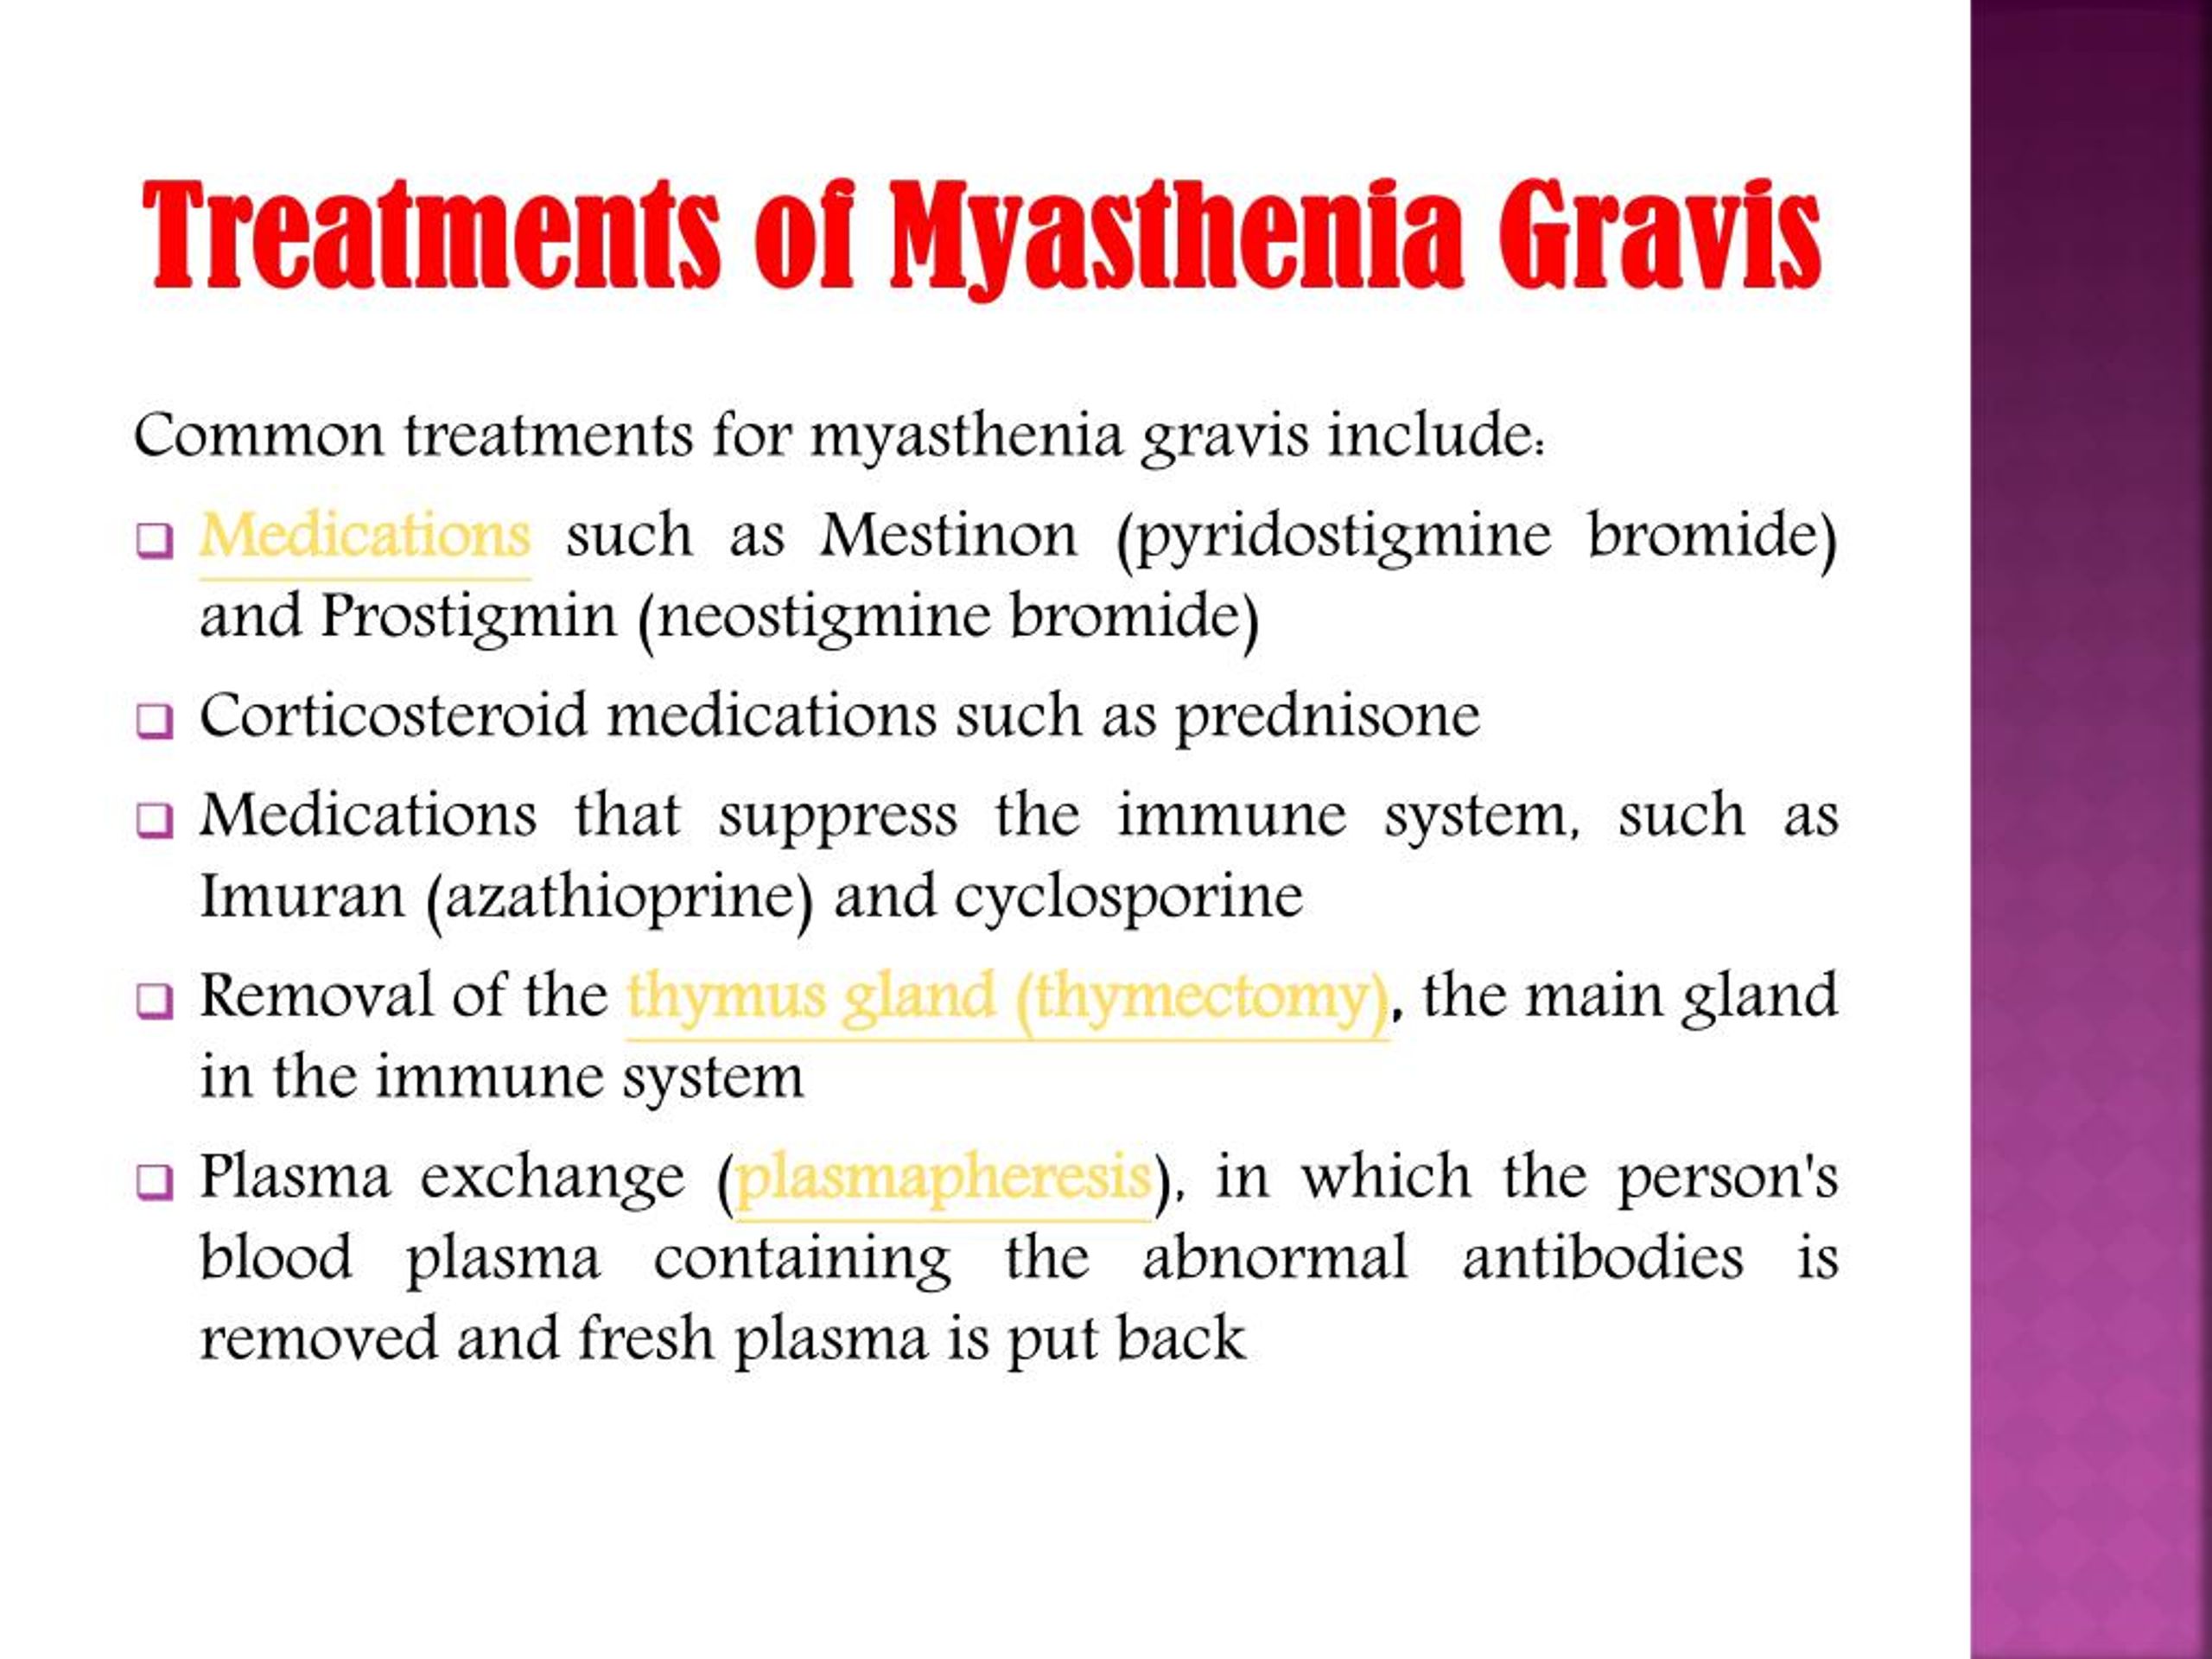 myasthenia gravis sip of water bladder before medication